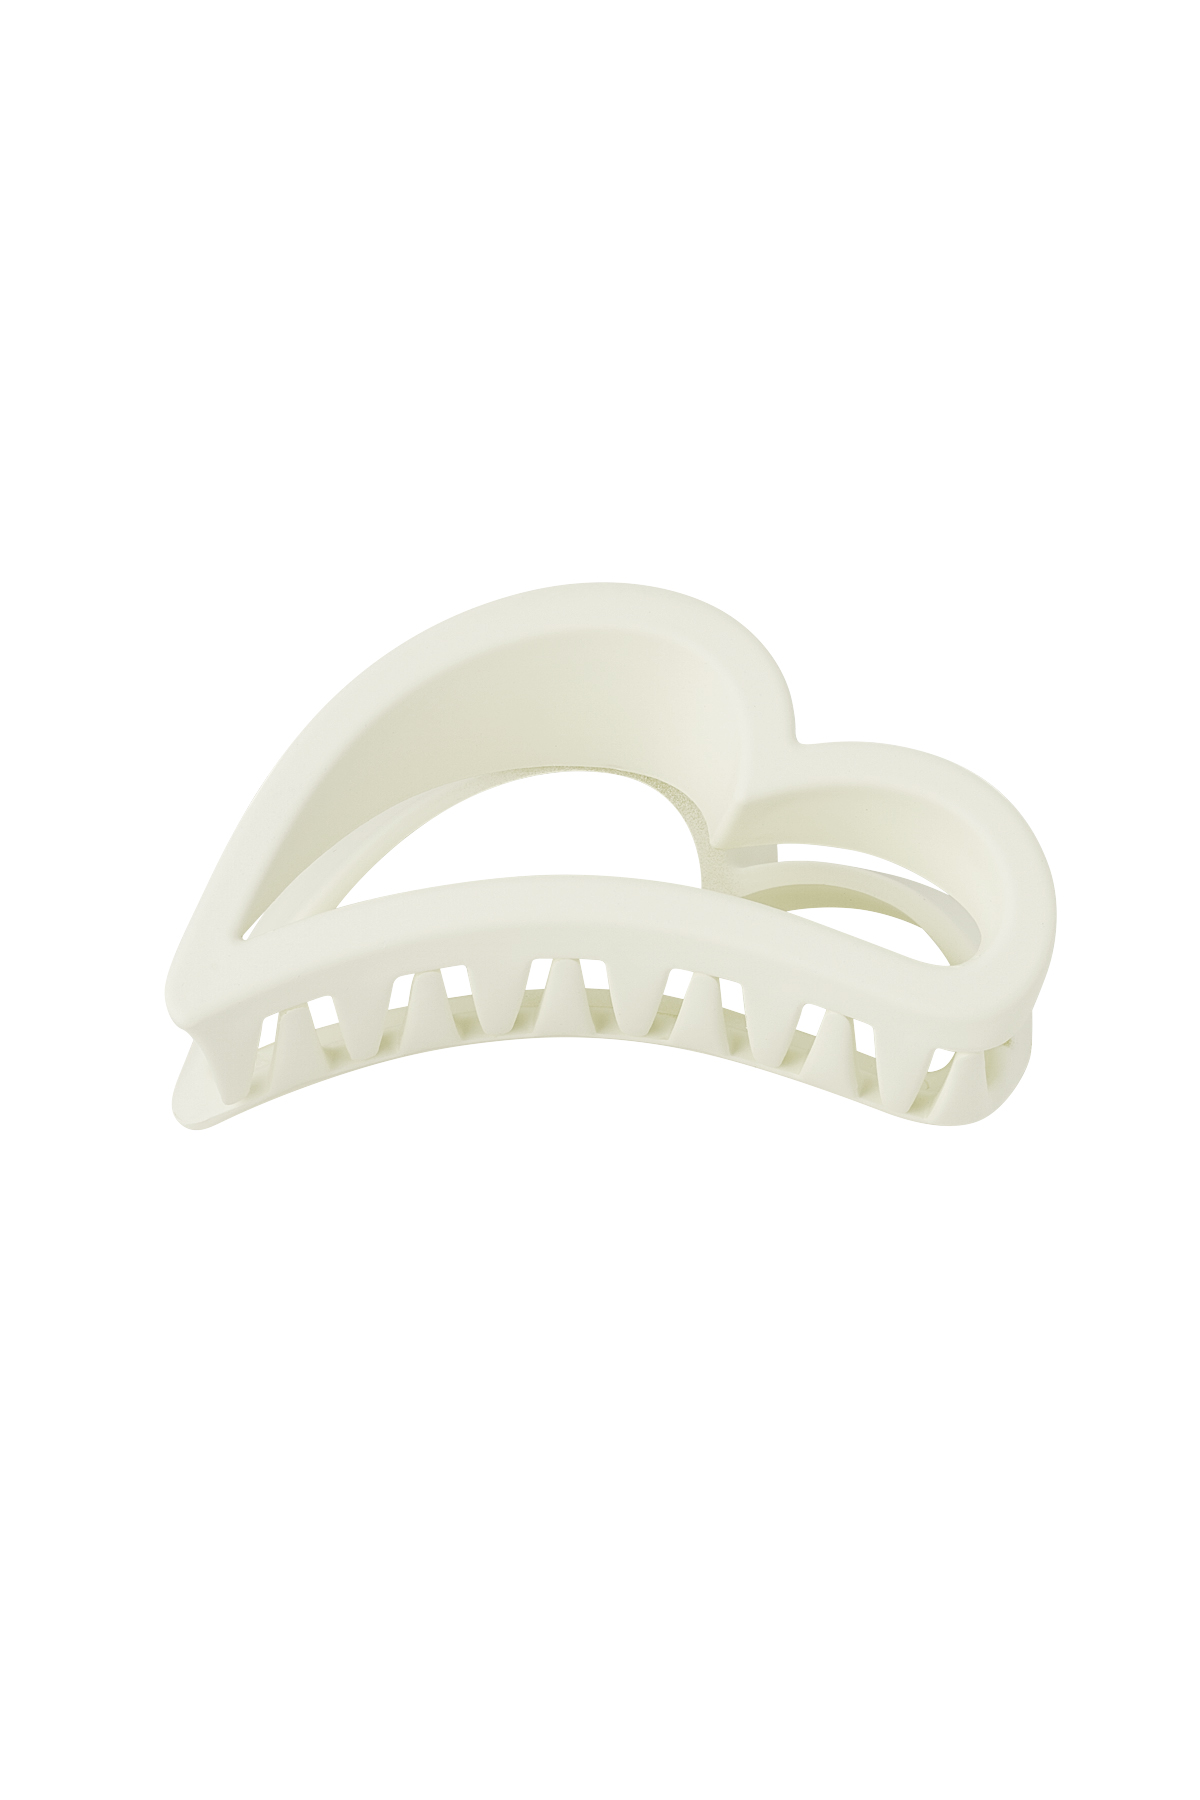 Hair clip wing - cream Plastic h5 